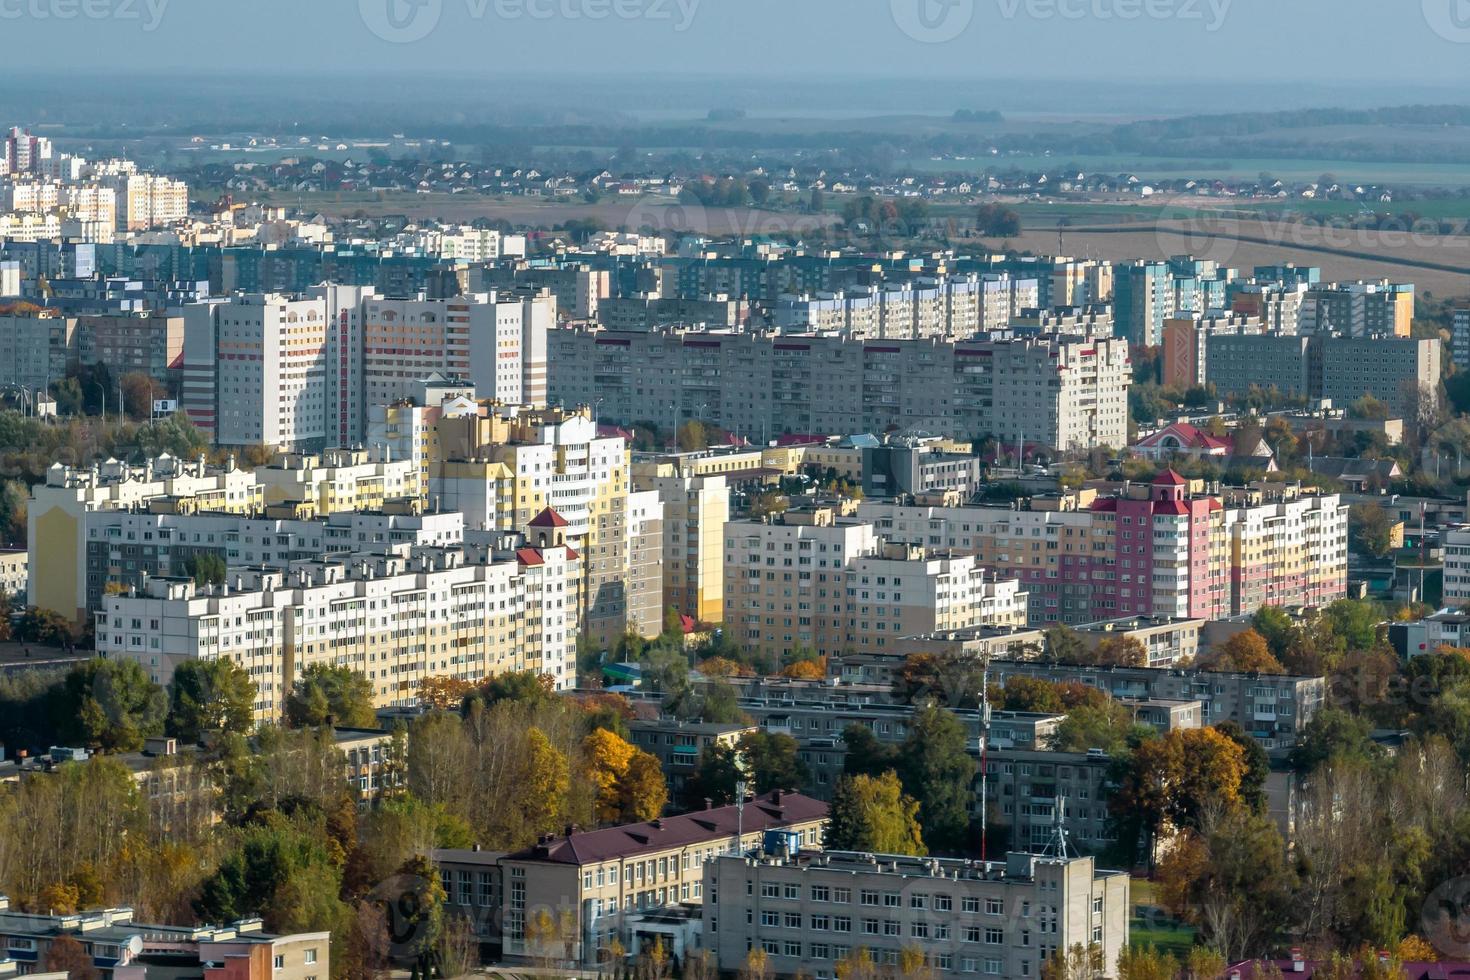 vue panoramique aérienne depuis la hauteur d'un complexe résidentiel à plusieurs étages et développement urbain en automne photo